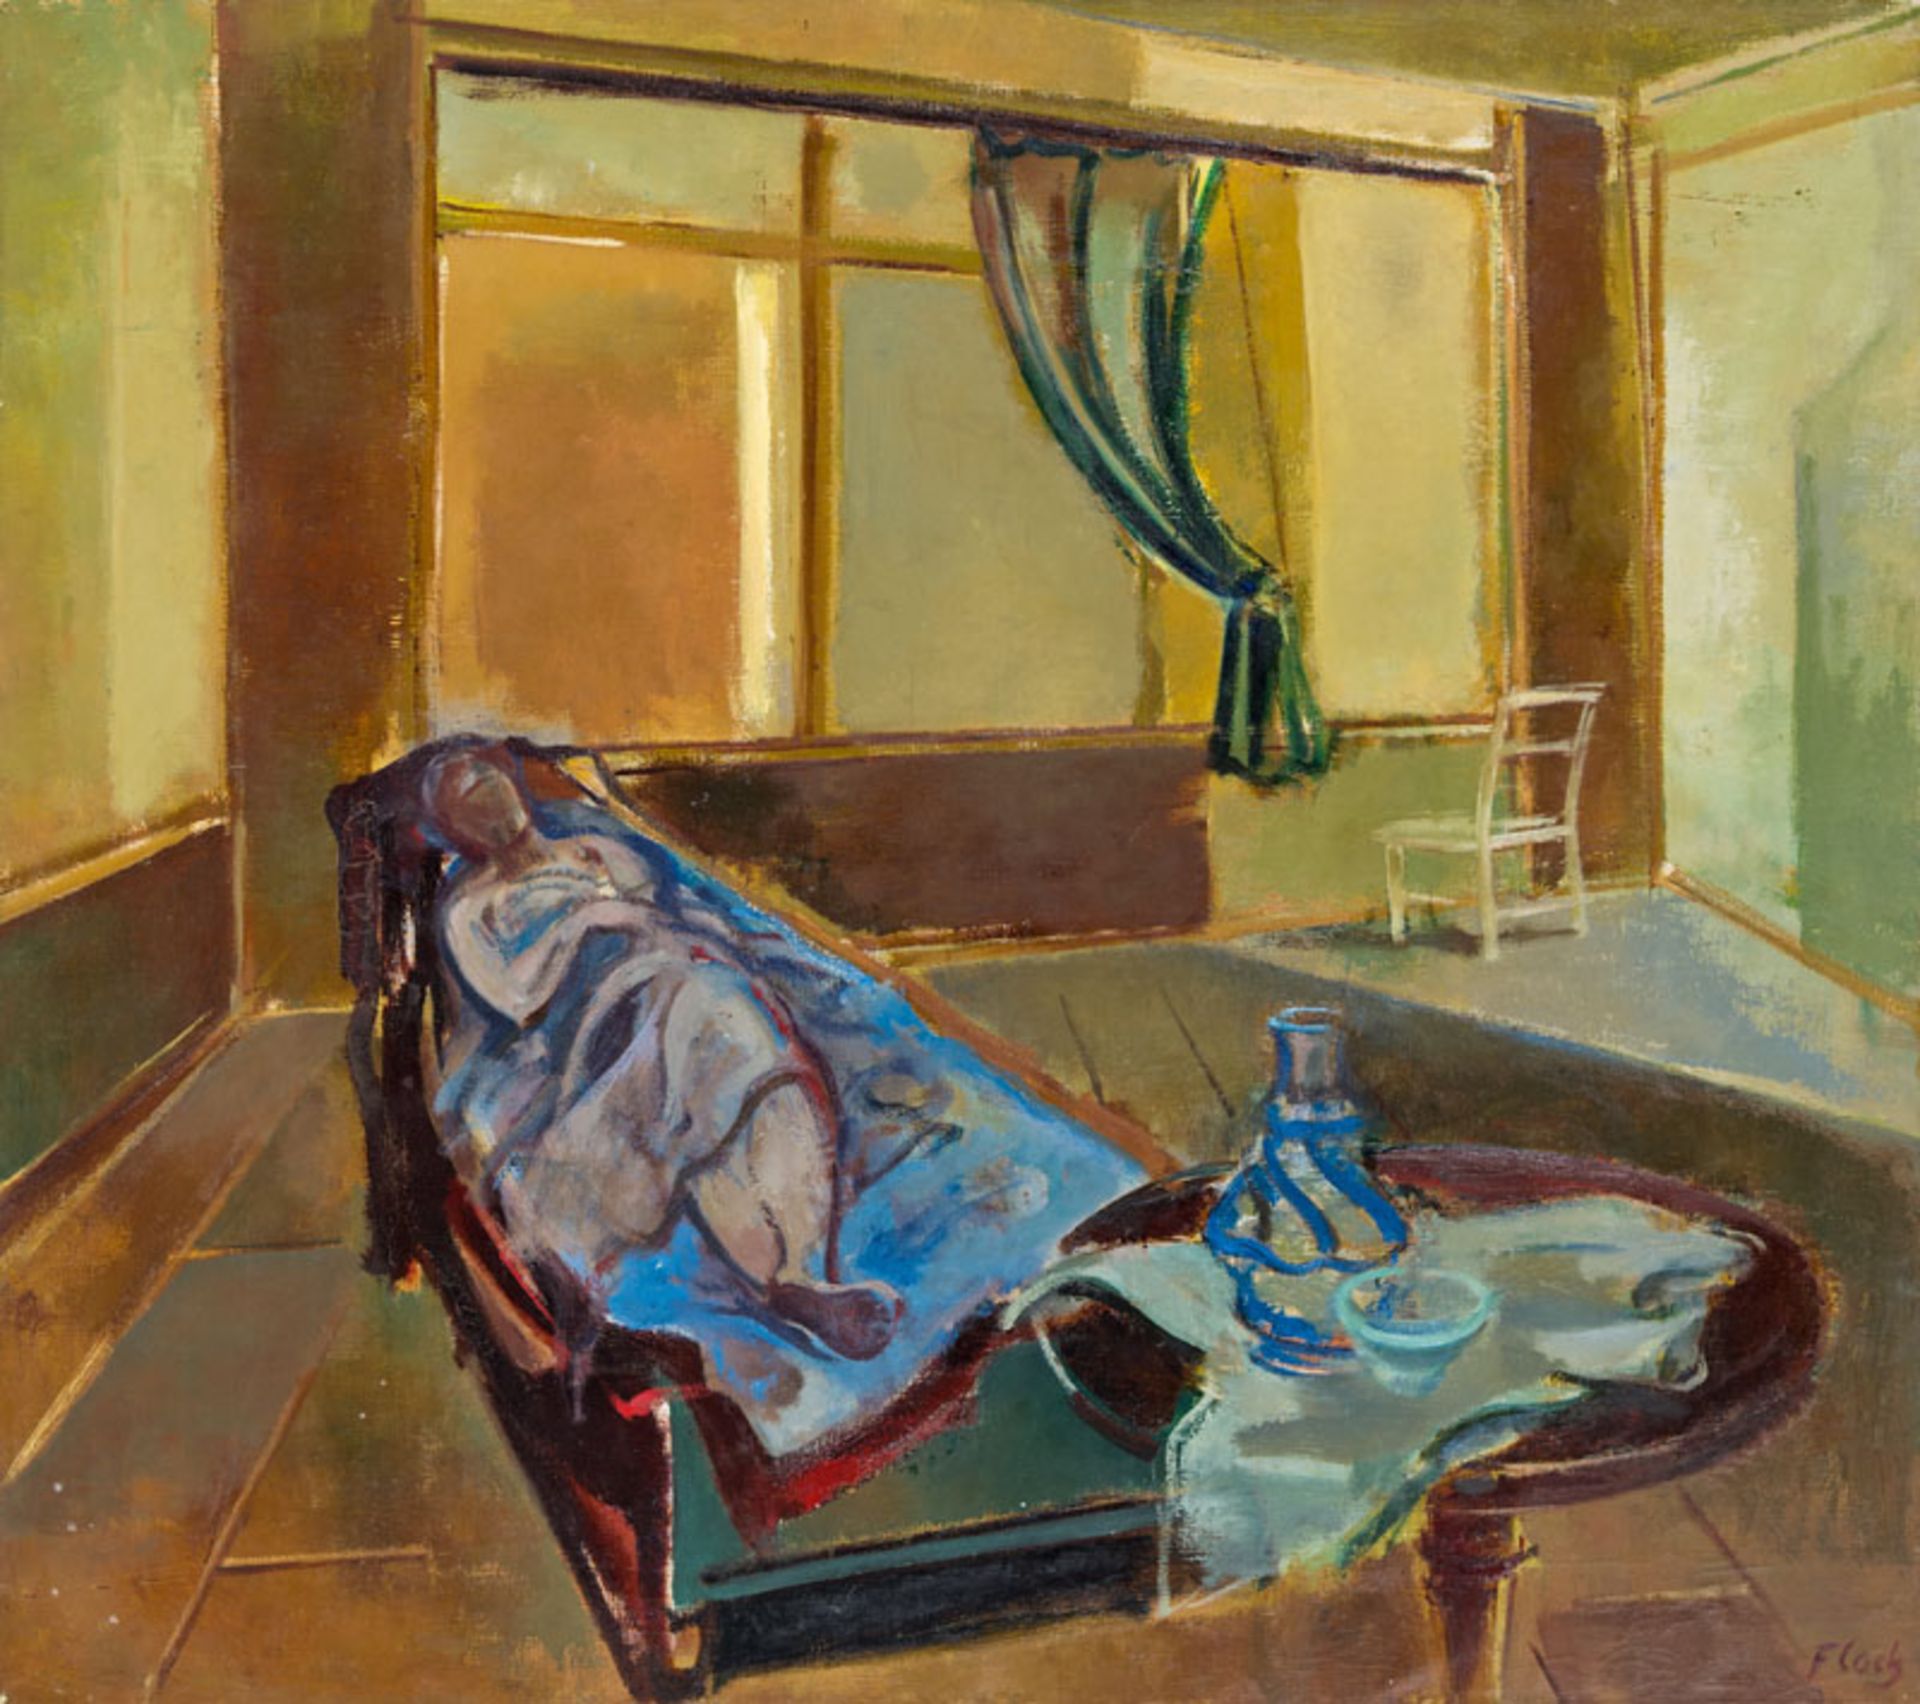 Josef Floch *Quiet afternoon, 1966 oil on canvas; 98.5 × 110 cm

Josef Floch *Stiller Nachmittag,